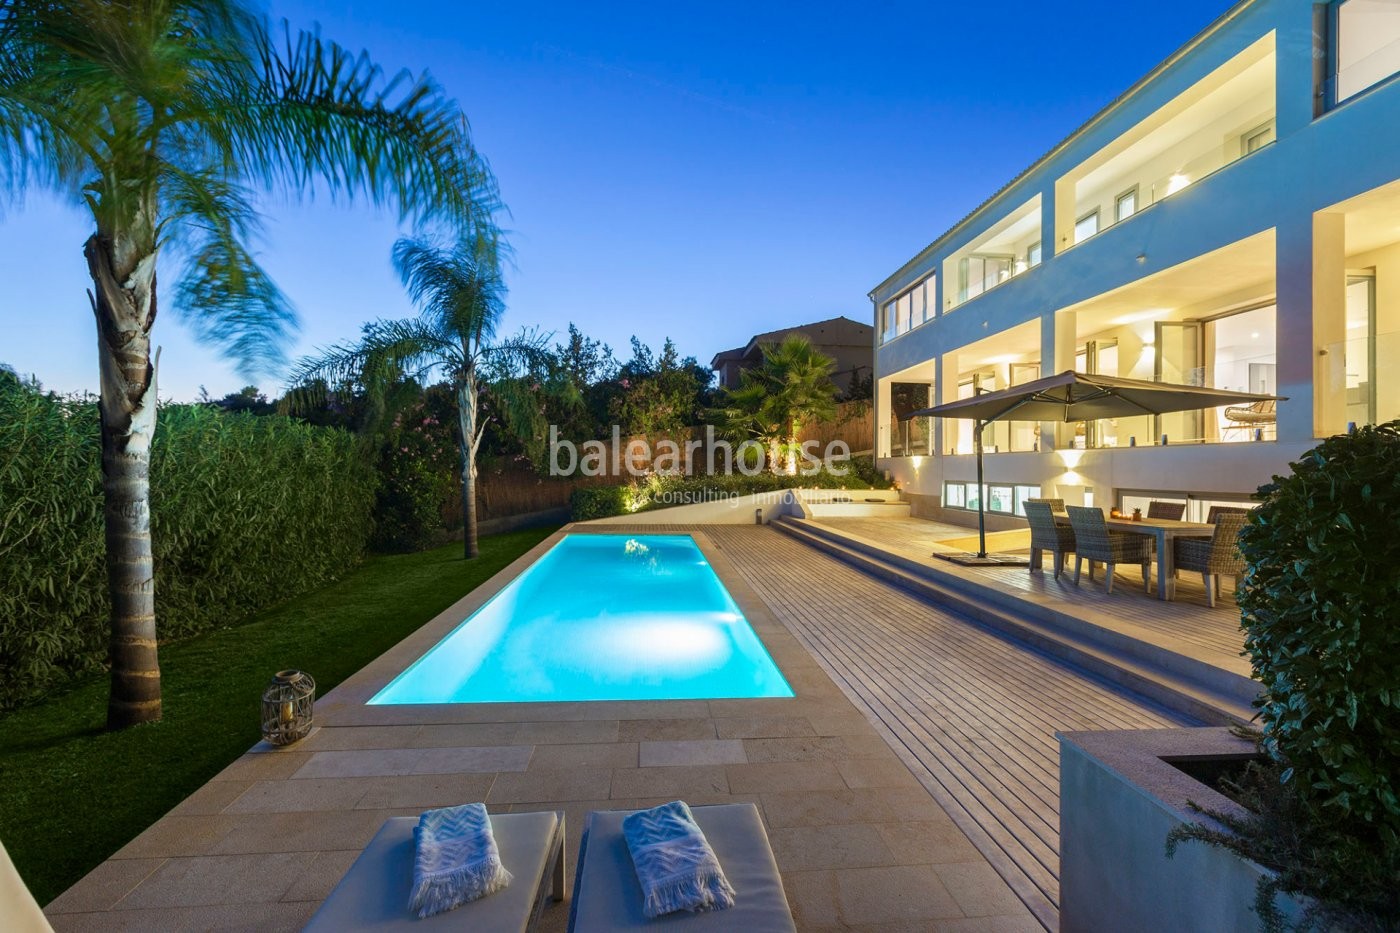 Excelente reforma de esta villa en Costa d'en Blanes con piscina, jardín y bonitas vistas al mar.